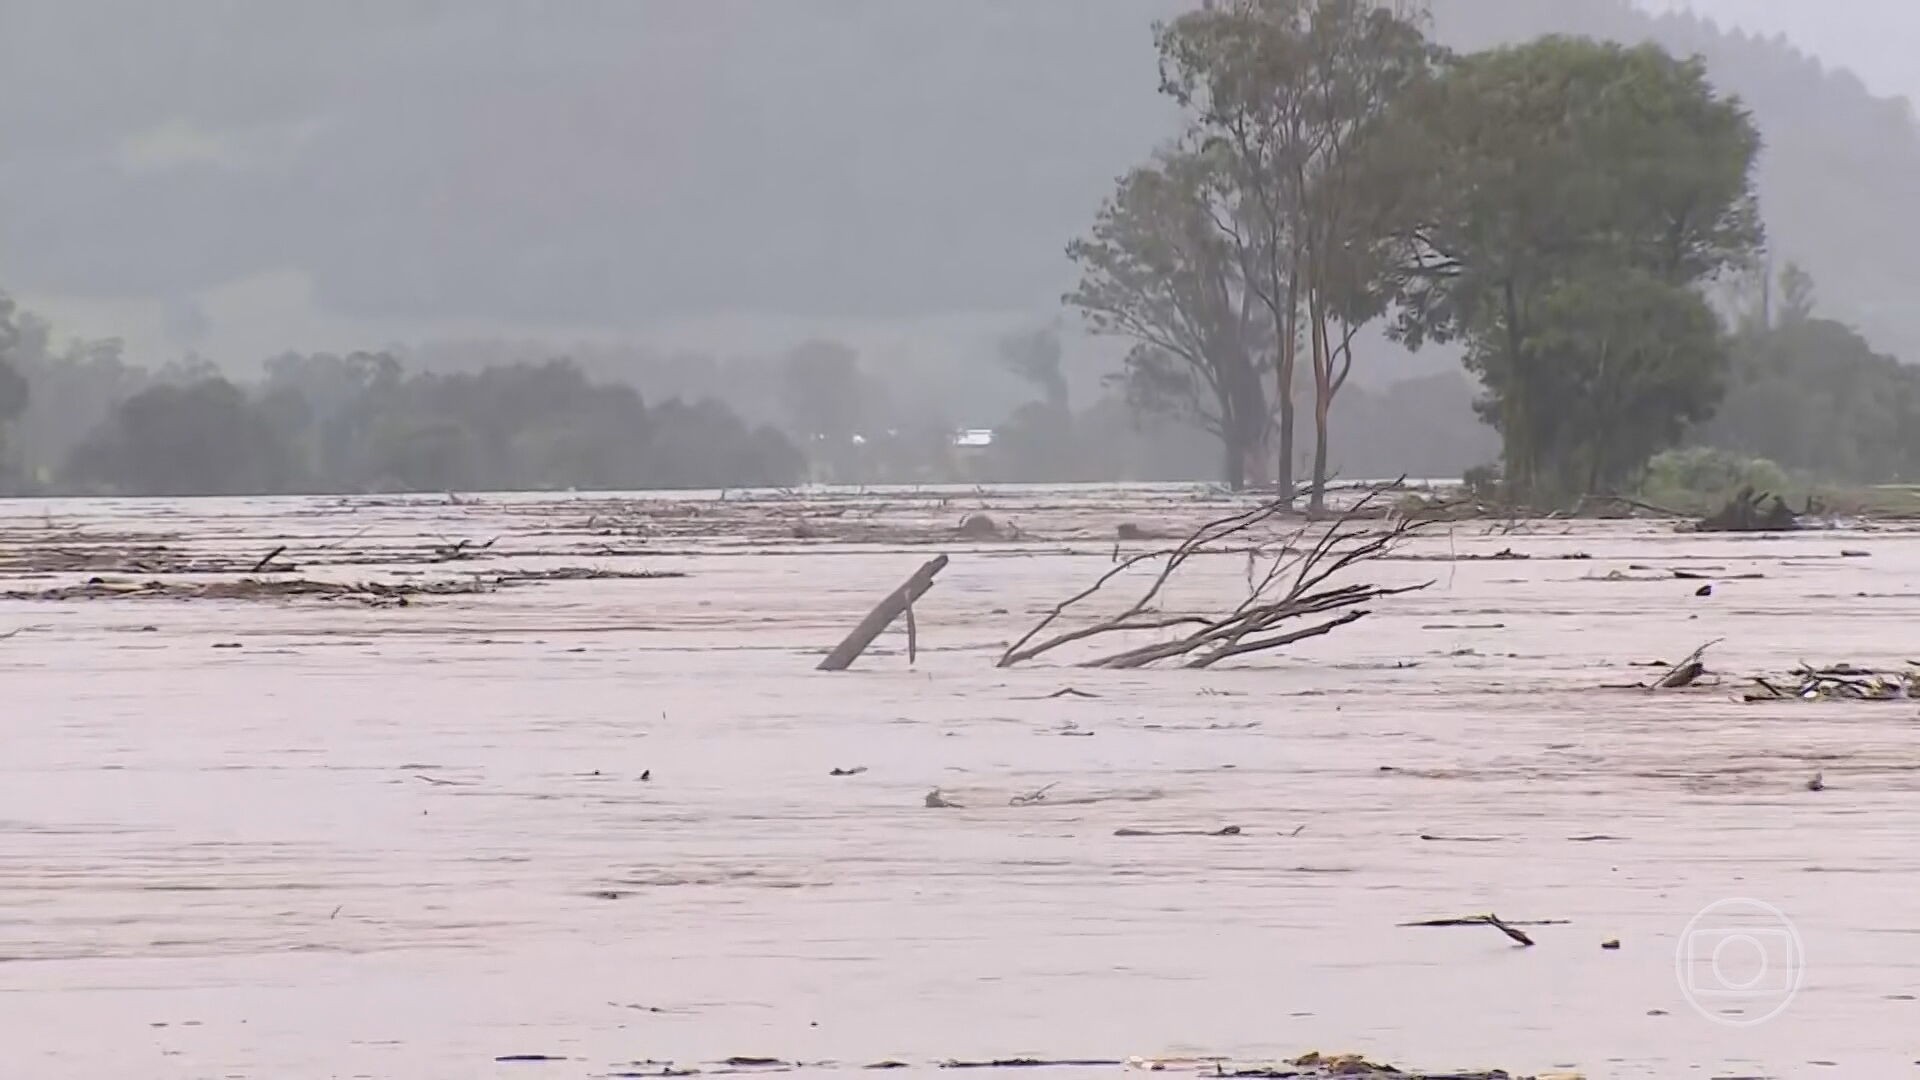 Rio Grande do Sul decreta estado de calamidade pública por conta das cheias 